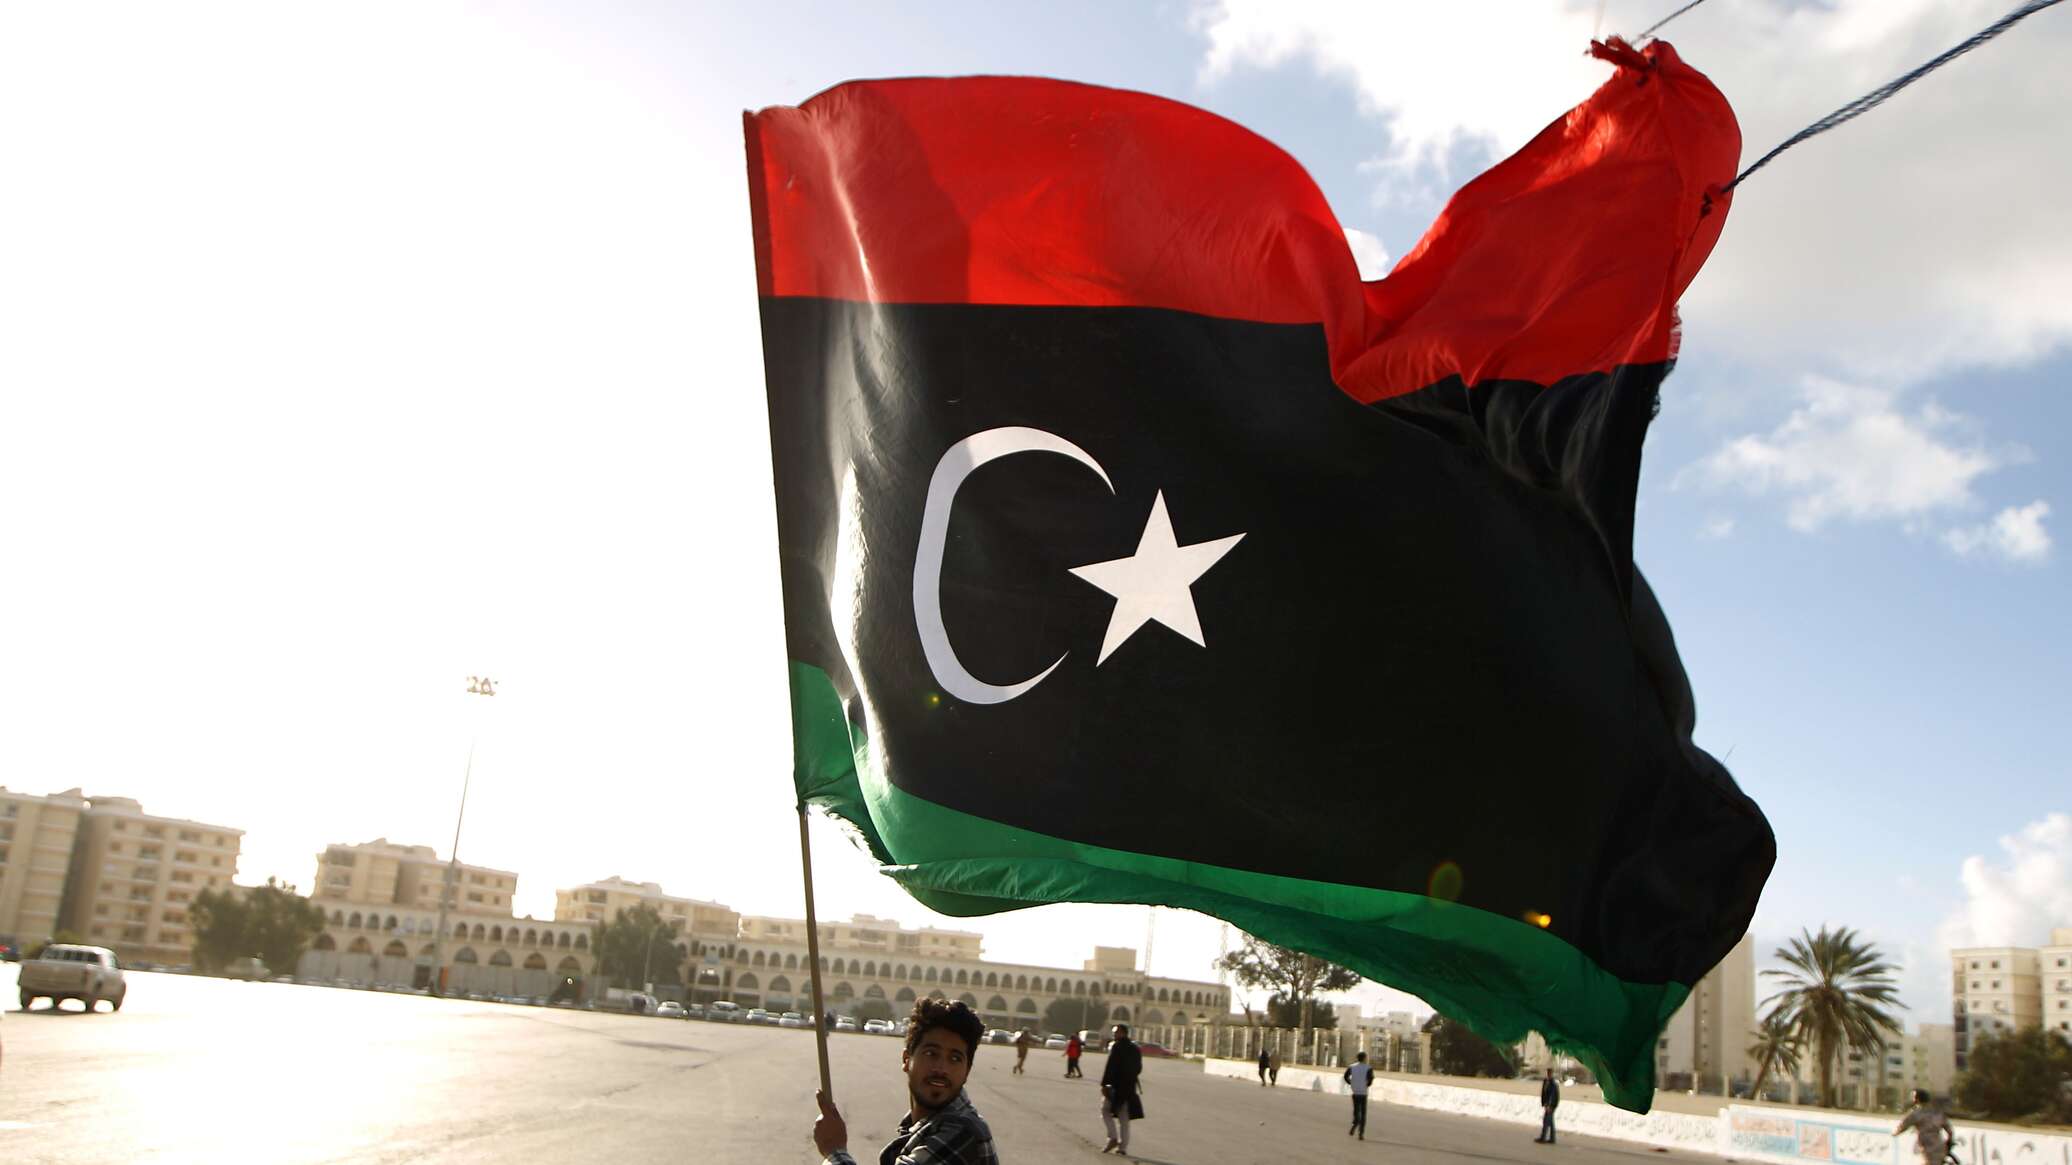 ليبيا... انطلاق فعاليات تجمع دول الساحل والصحراء في طرابلس بمشاركة أكثر من 20 دولة